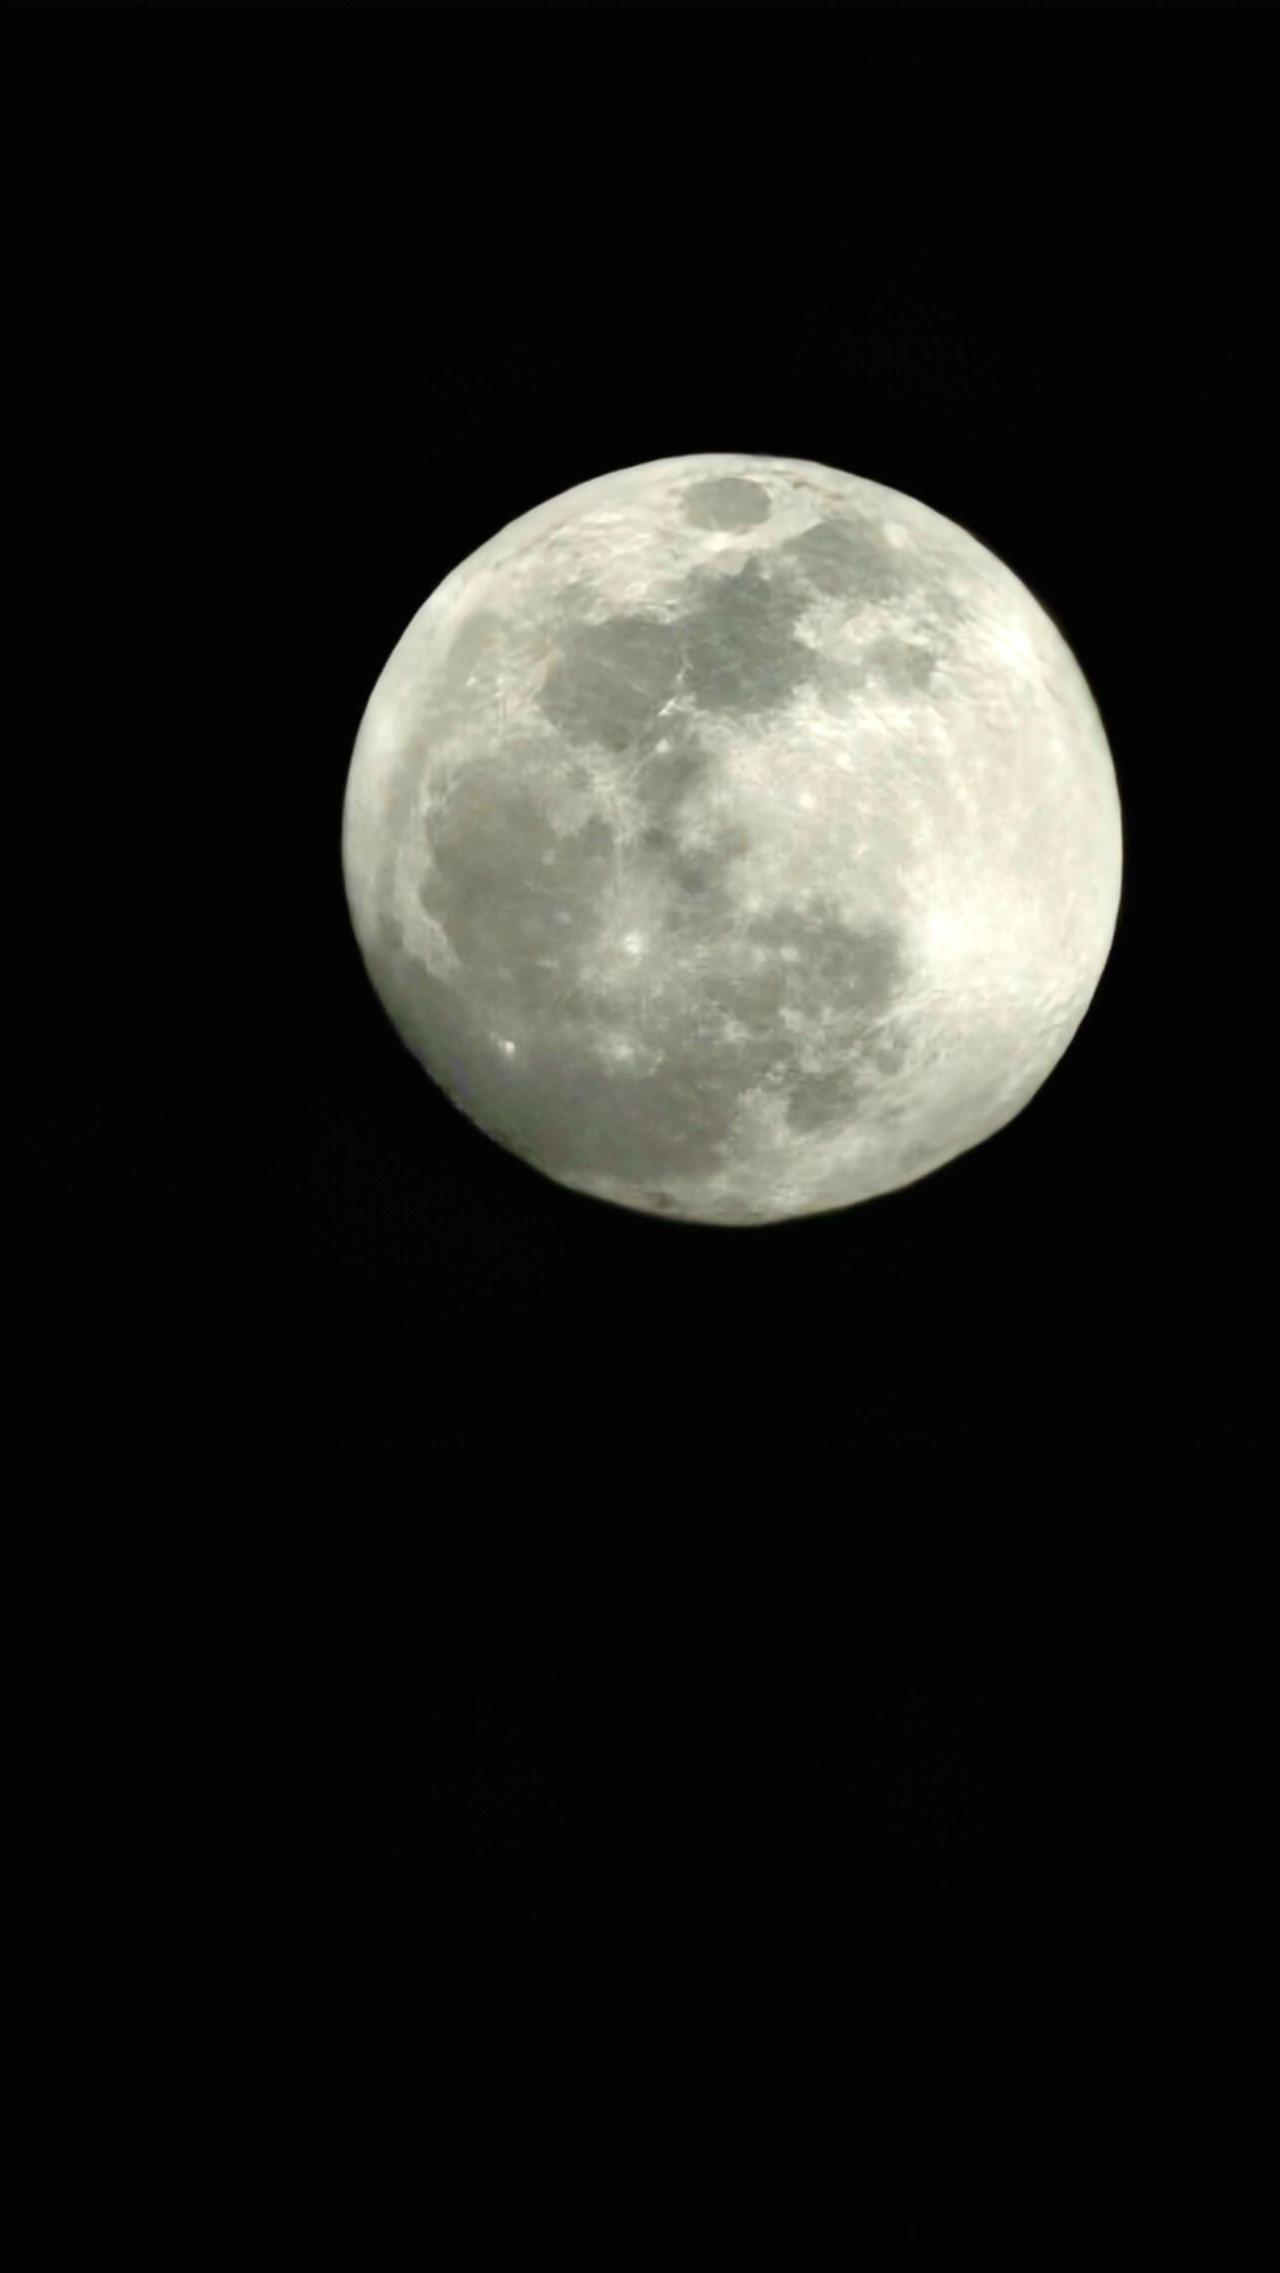 Nombre:  luna.jpg
Visitas: 20
Tamaño: 74.7 KB